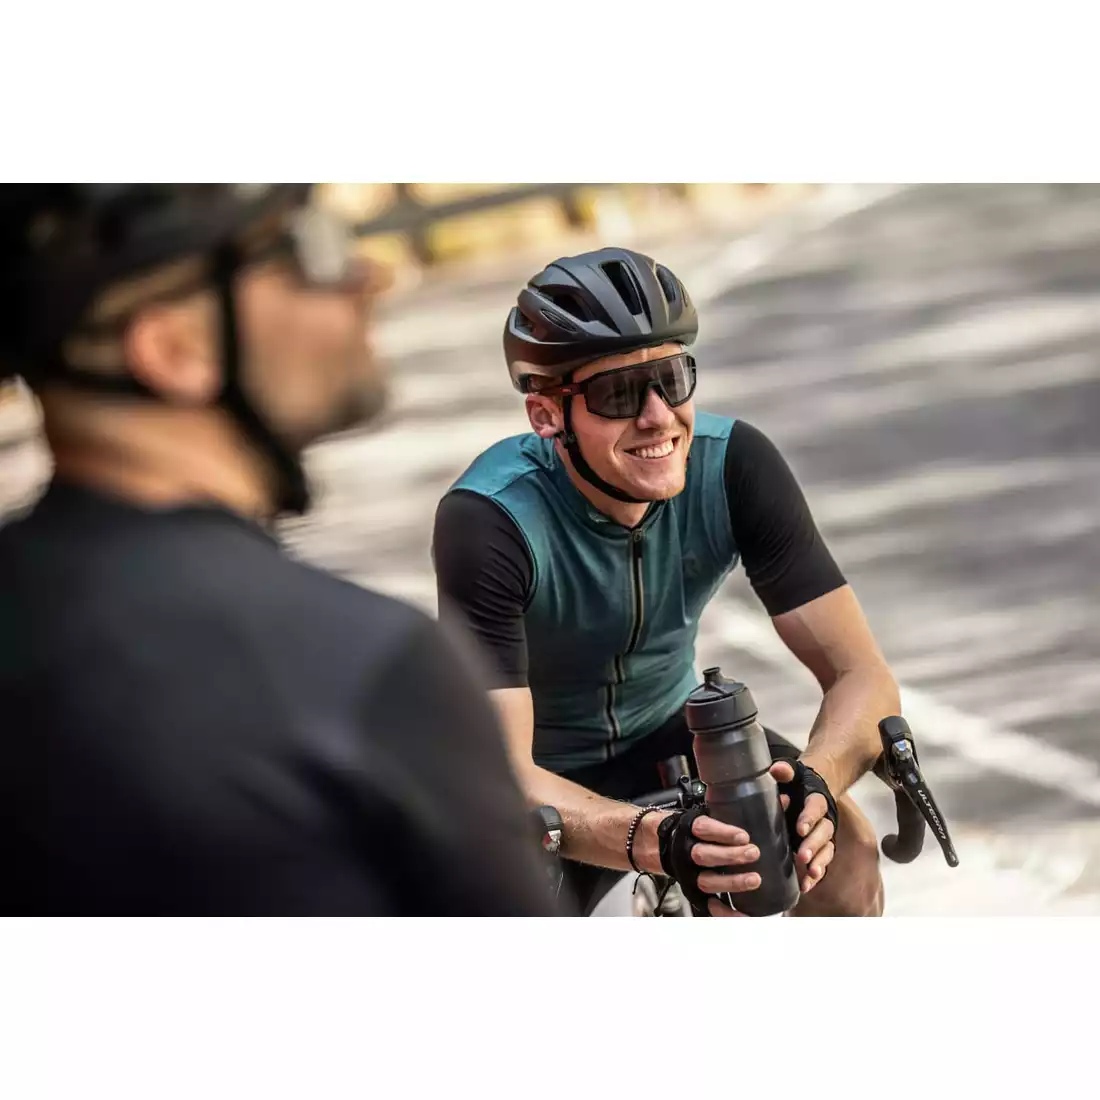 Rogelli MELANGE pánský cyklistický dres, tyrkysově černá